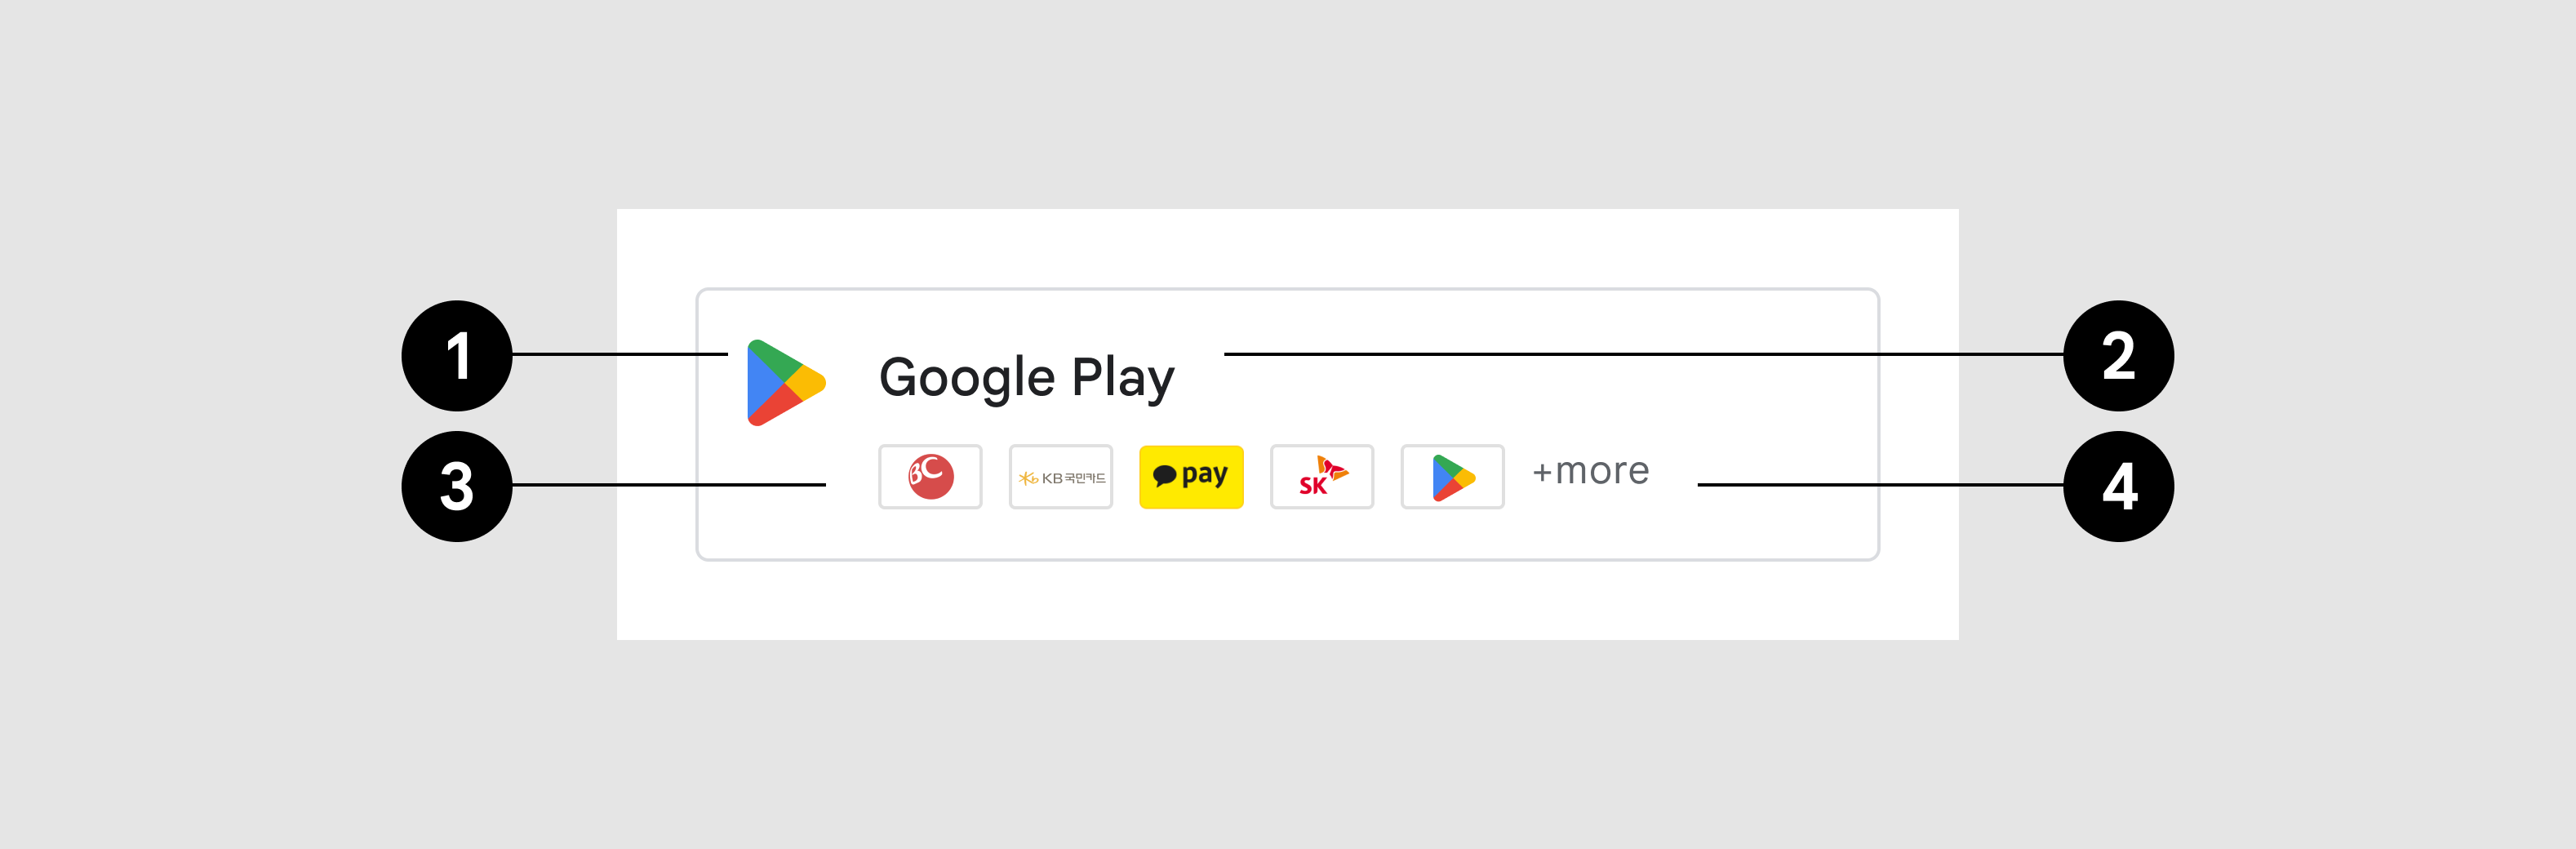 botón de Google Play